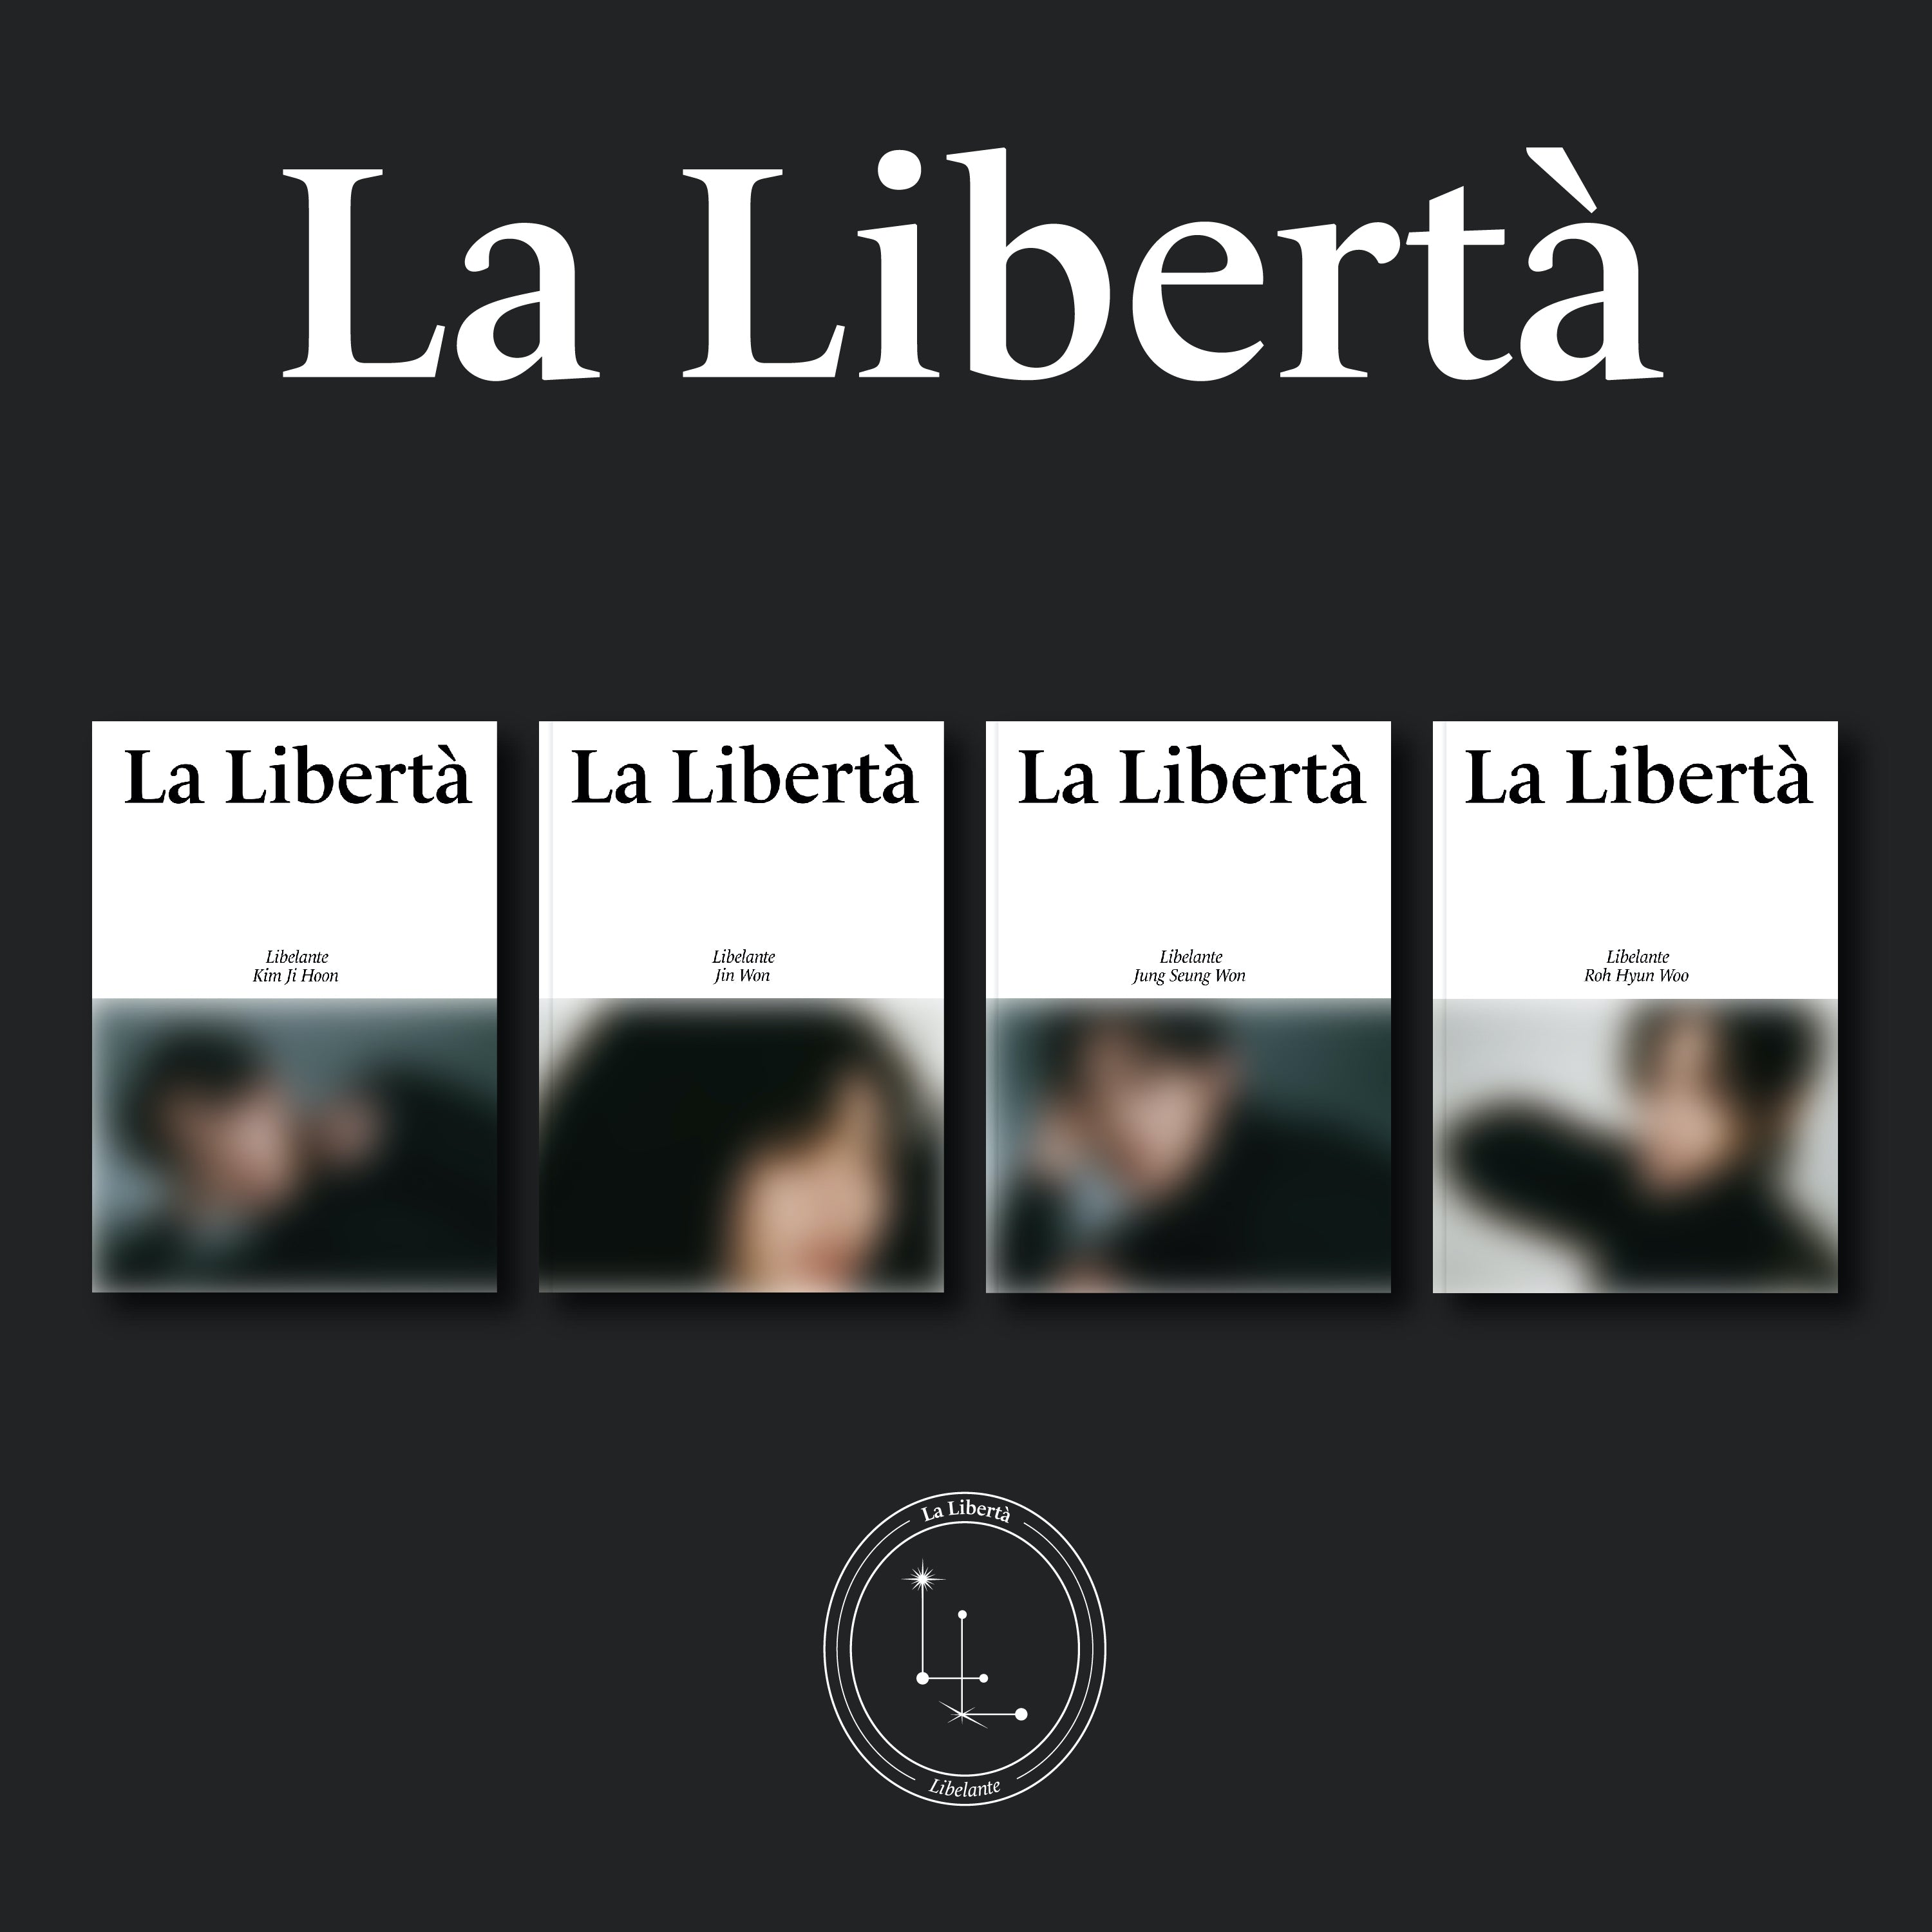 리베란테 Libelante - 미니 1집 La Liberta